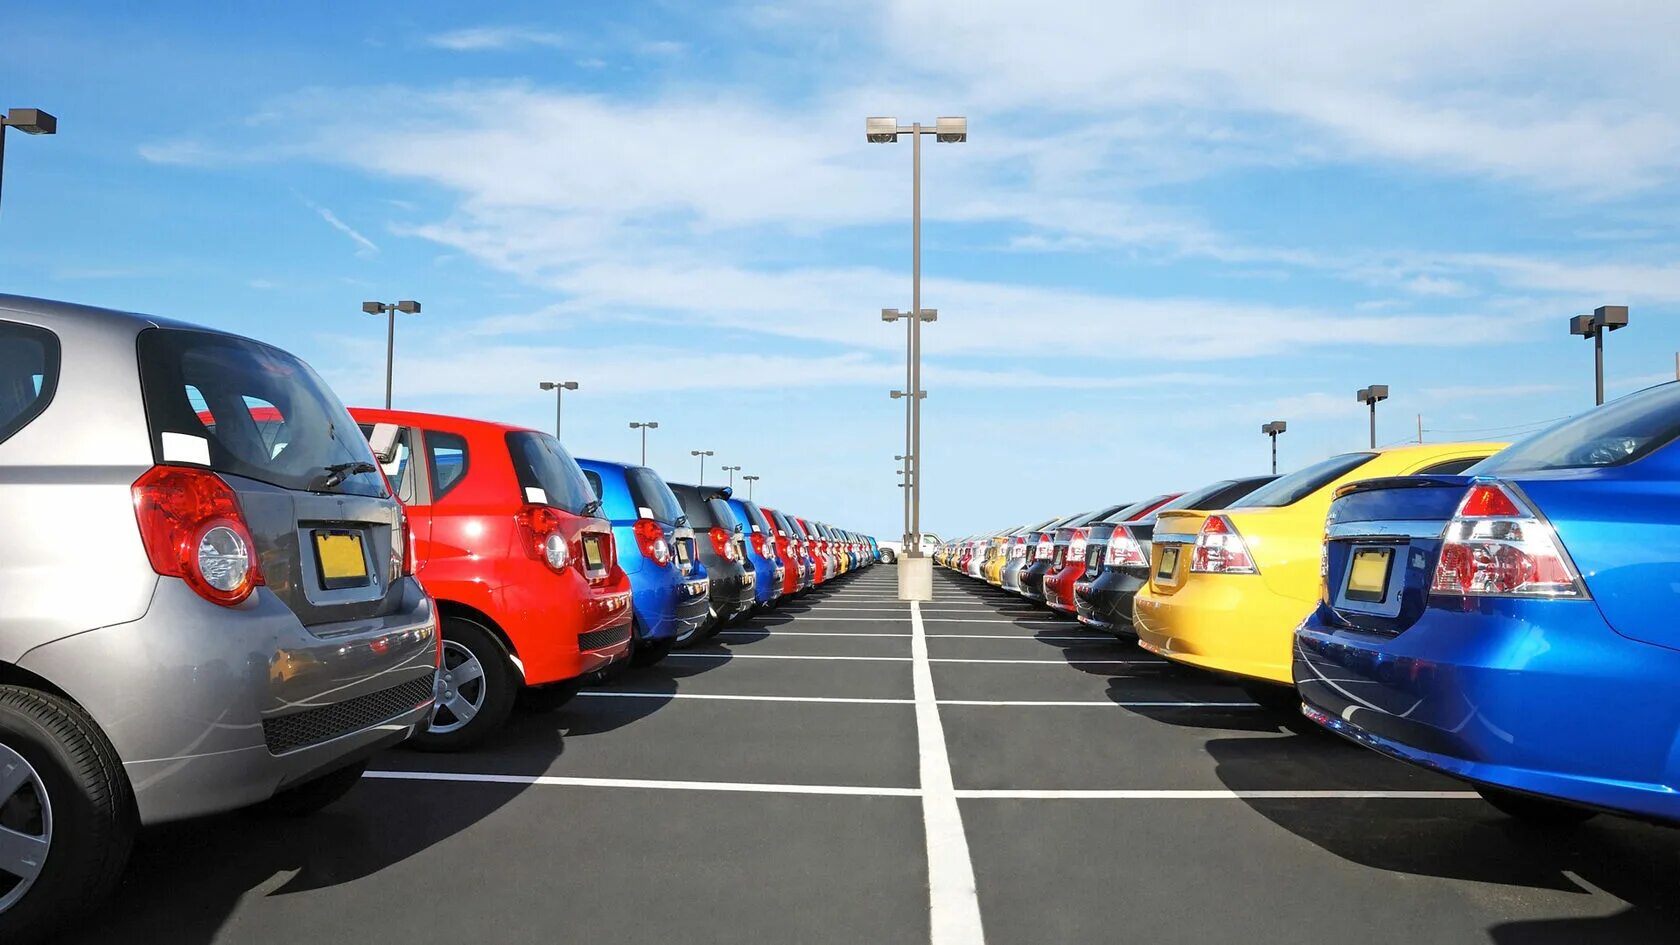 Автохайфай. Машина на парковке. Стоянка автомобилей. Машины в ряд. Разноцветные машины в ряд.